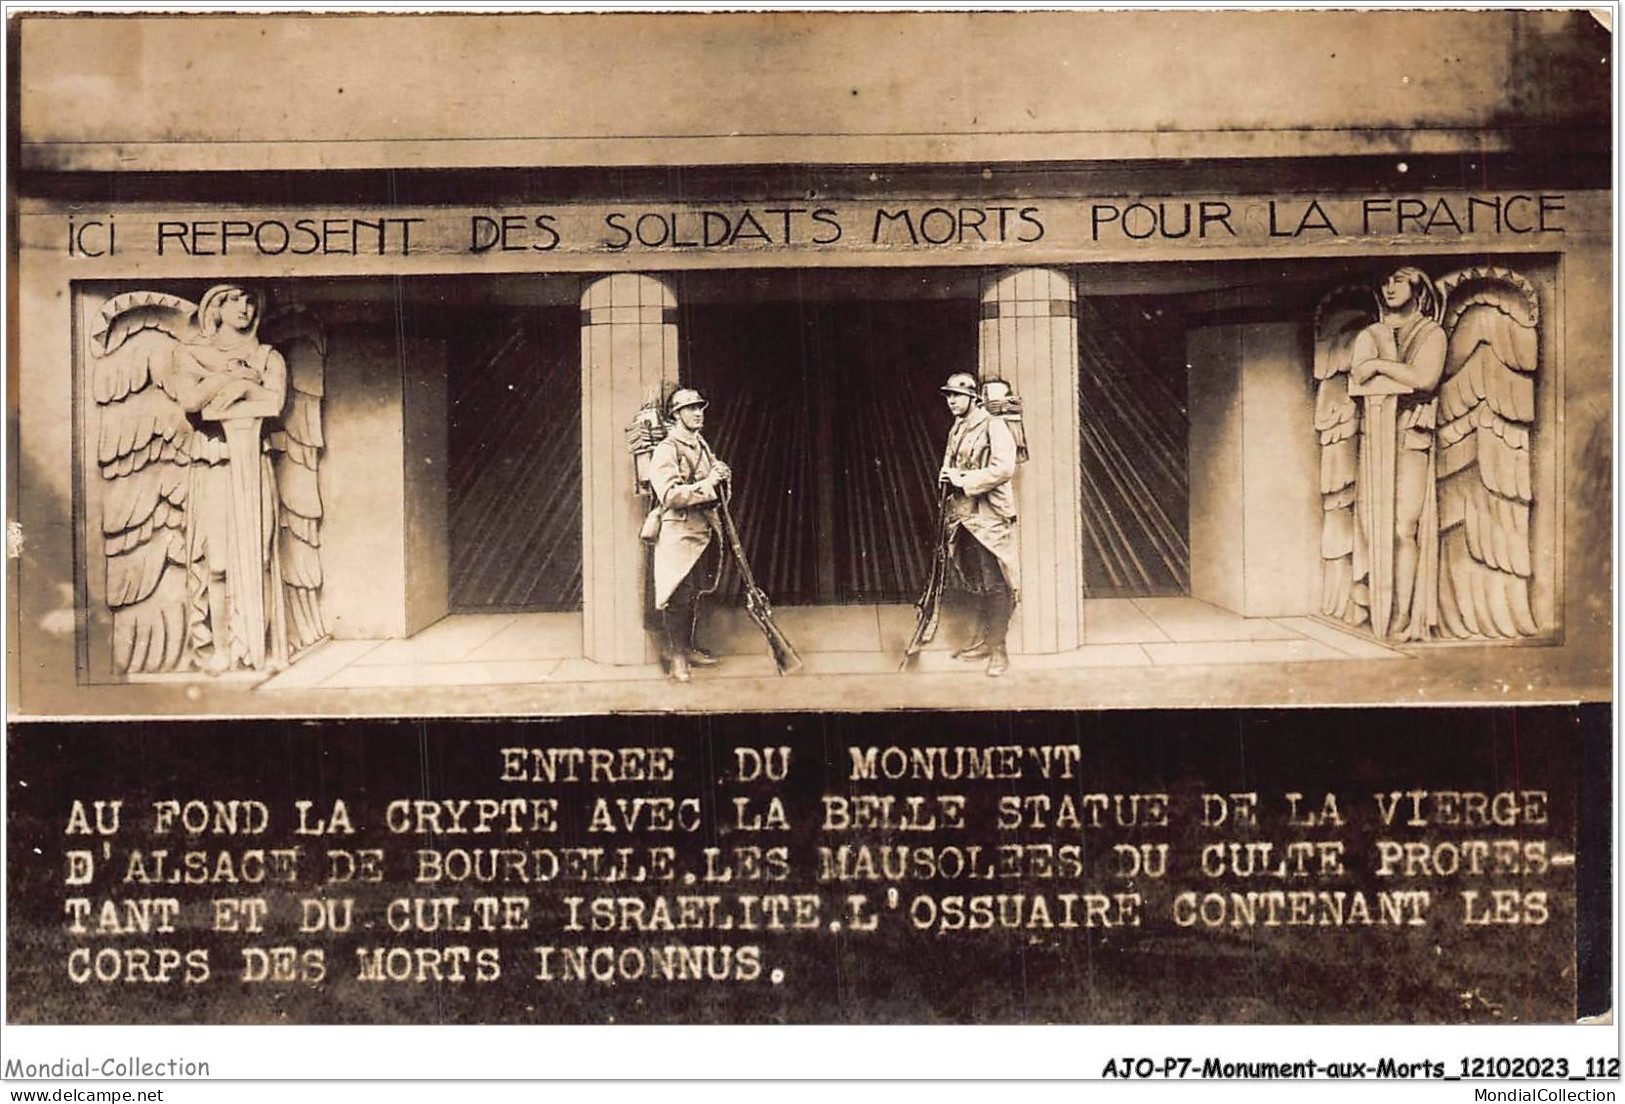 AJOP7-0704 - MONUMENT-AUX-MORTS - Ici Reposent Des Soldats Morts Pour La France -CULTE ISRAELITE JUDAICA JUIF RELIGION - War Memorials